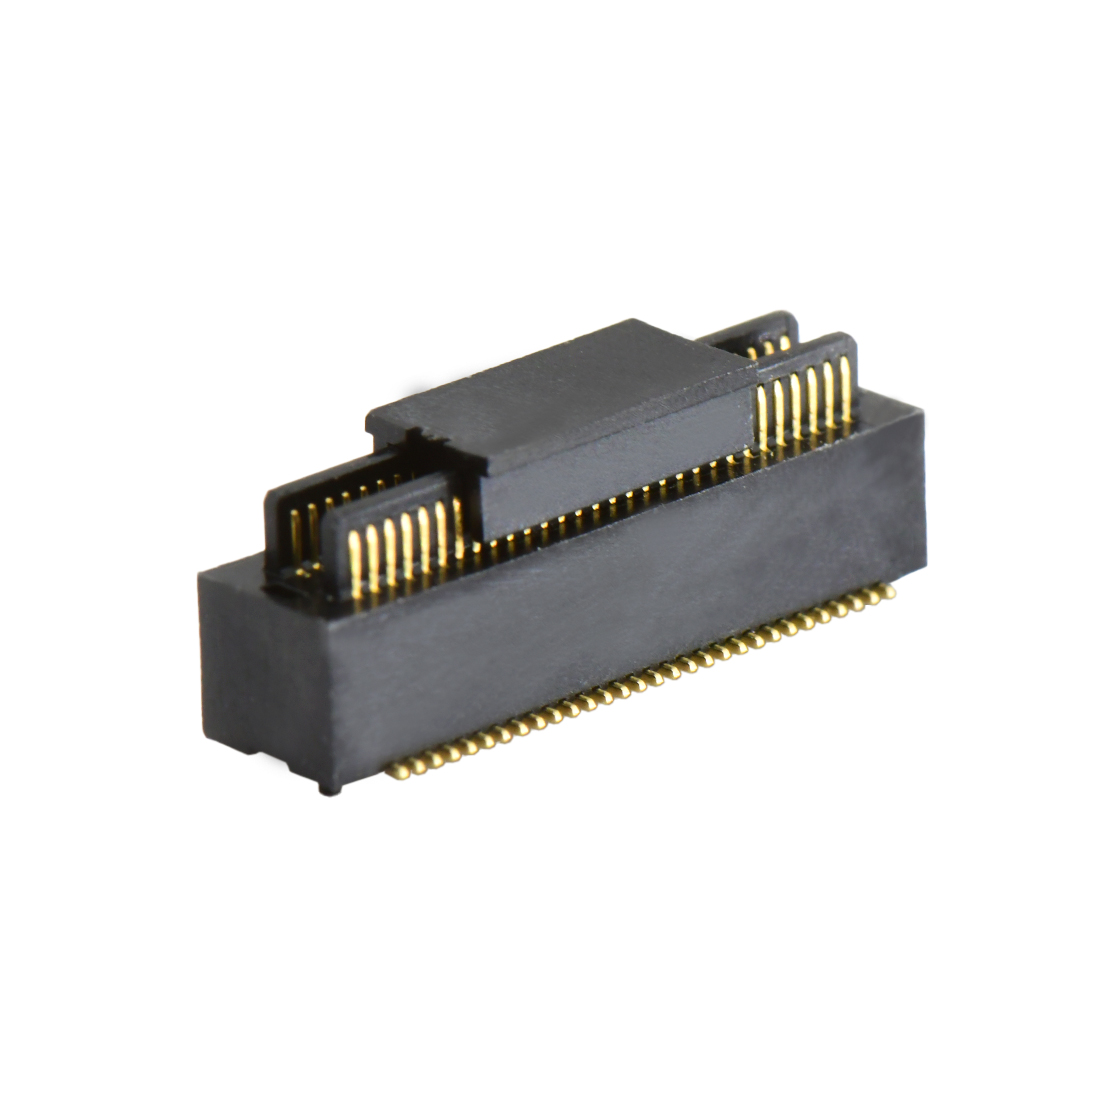 B0502板对板连接器Pitch 0.5 H4.0mm双槽双排 SMT型公座 60Pin黑色 Gold flash